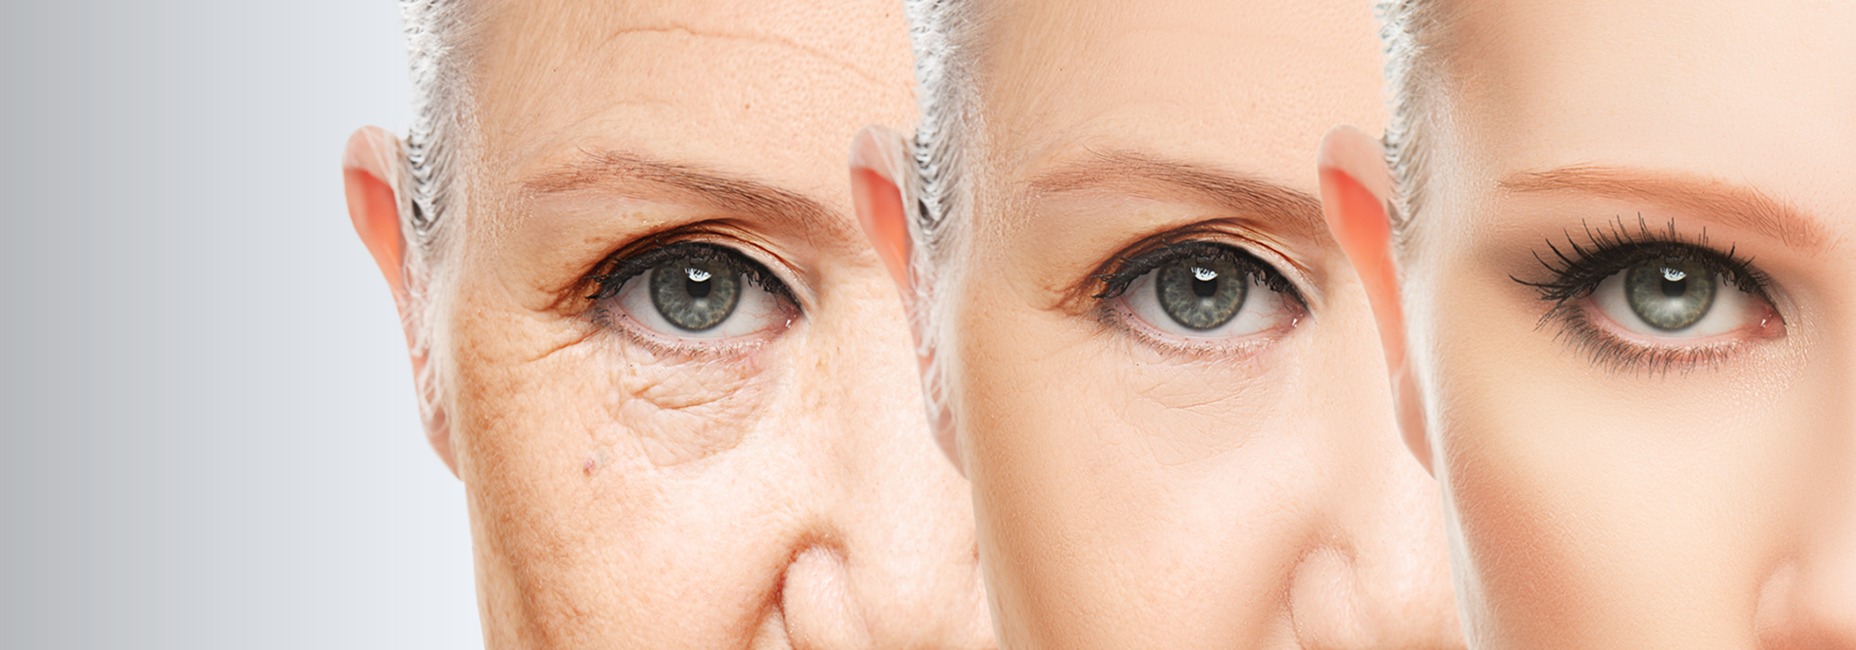 anti aging svájci hajtás értékesítés házi természetes anti aging arckrém